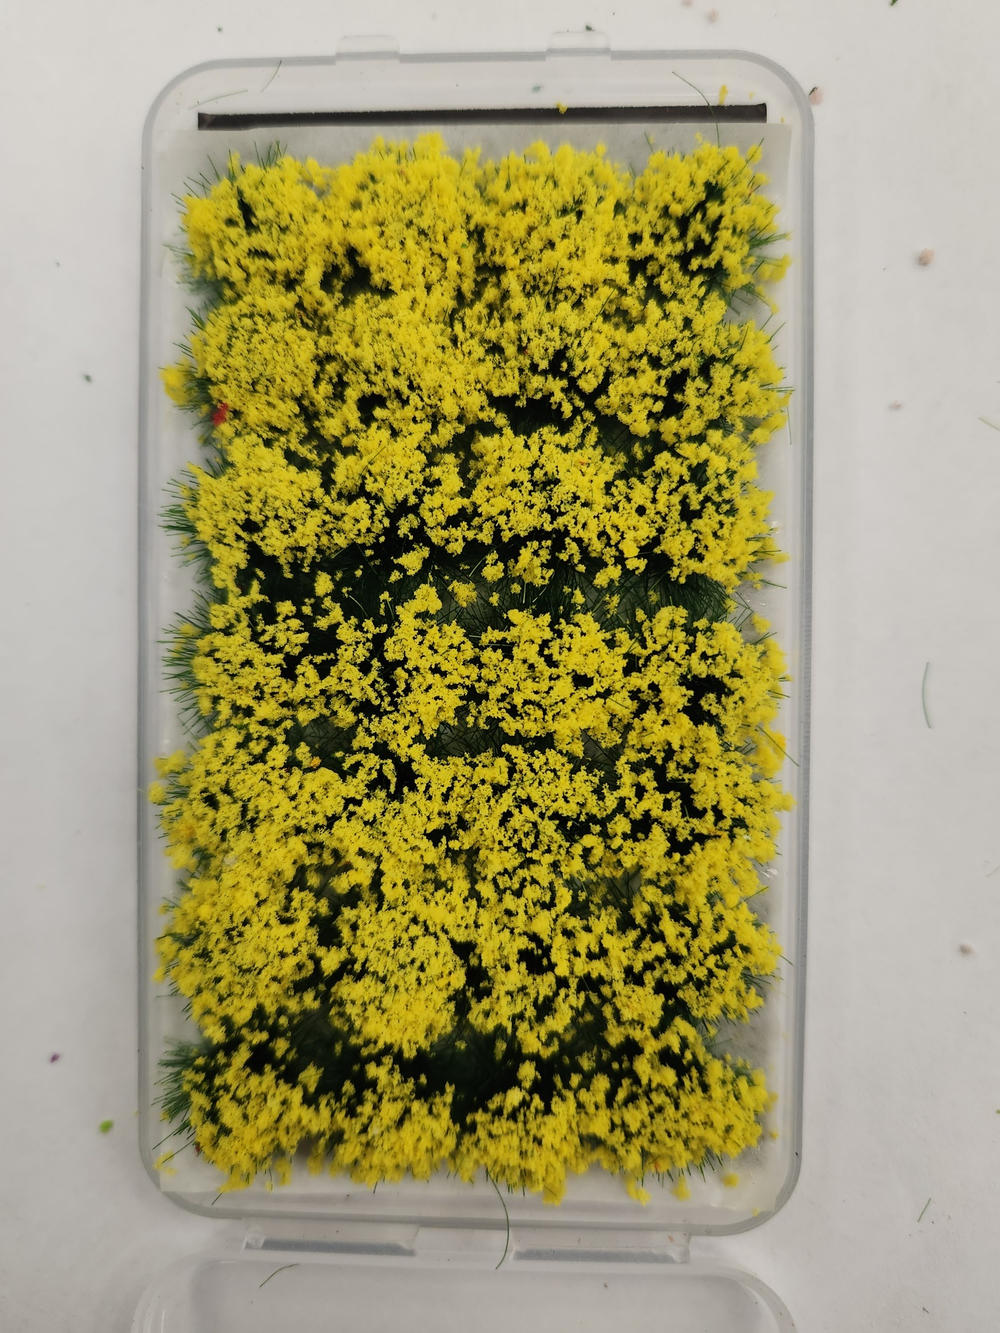 Пучки травы цветущие в ассортименте, 1 упаковка, 28шт. в упаковке